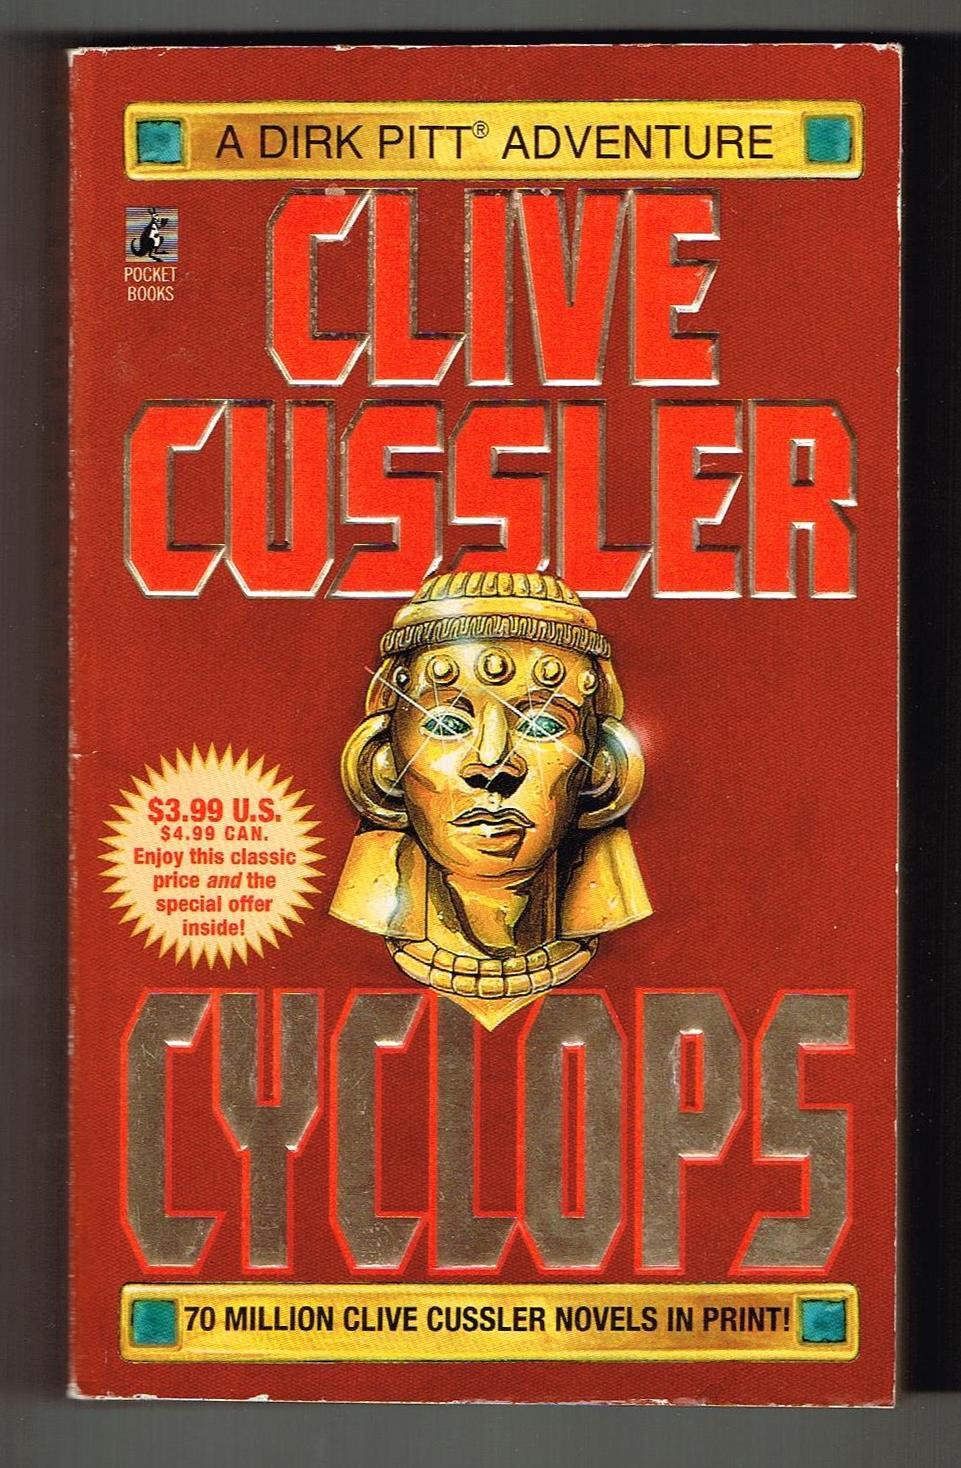 Cyclops (Dirk Pitt, #18) - Cussler, Clive